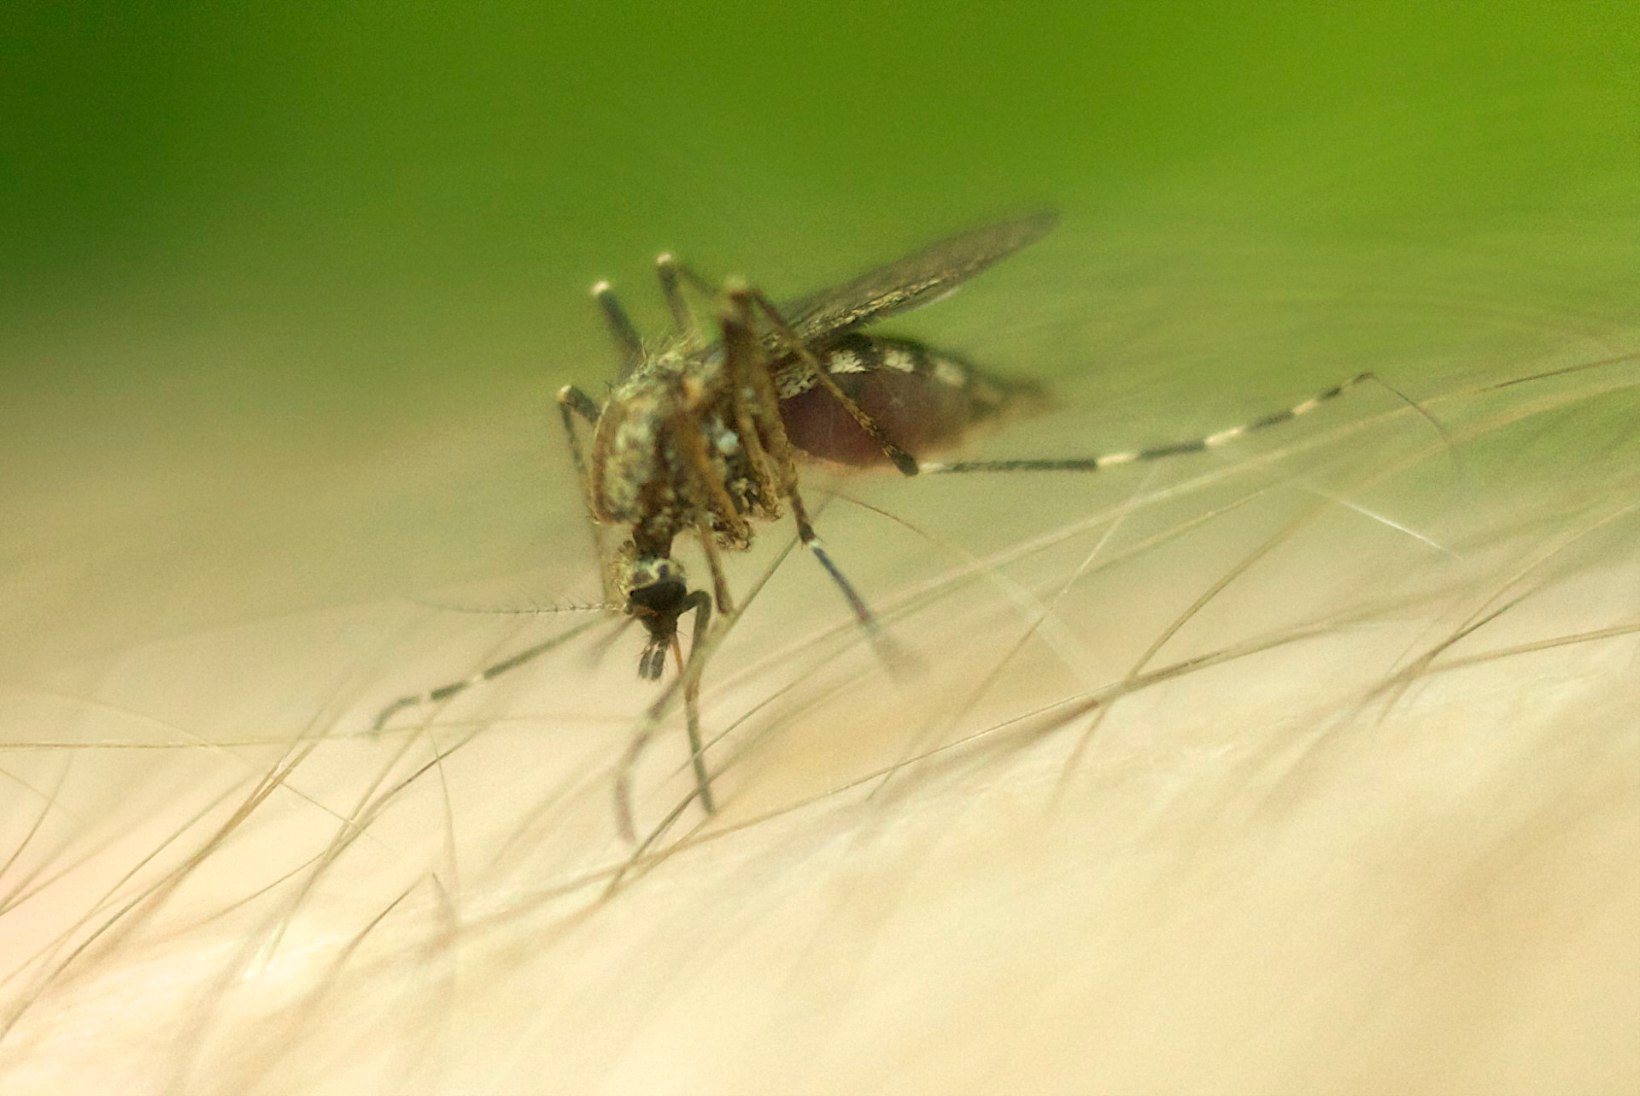 Keskkonnaekspert: tavalise sääse asemel malaariasääske näha pole Eestis varsti enam utoopia